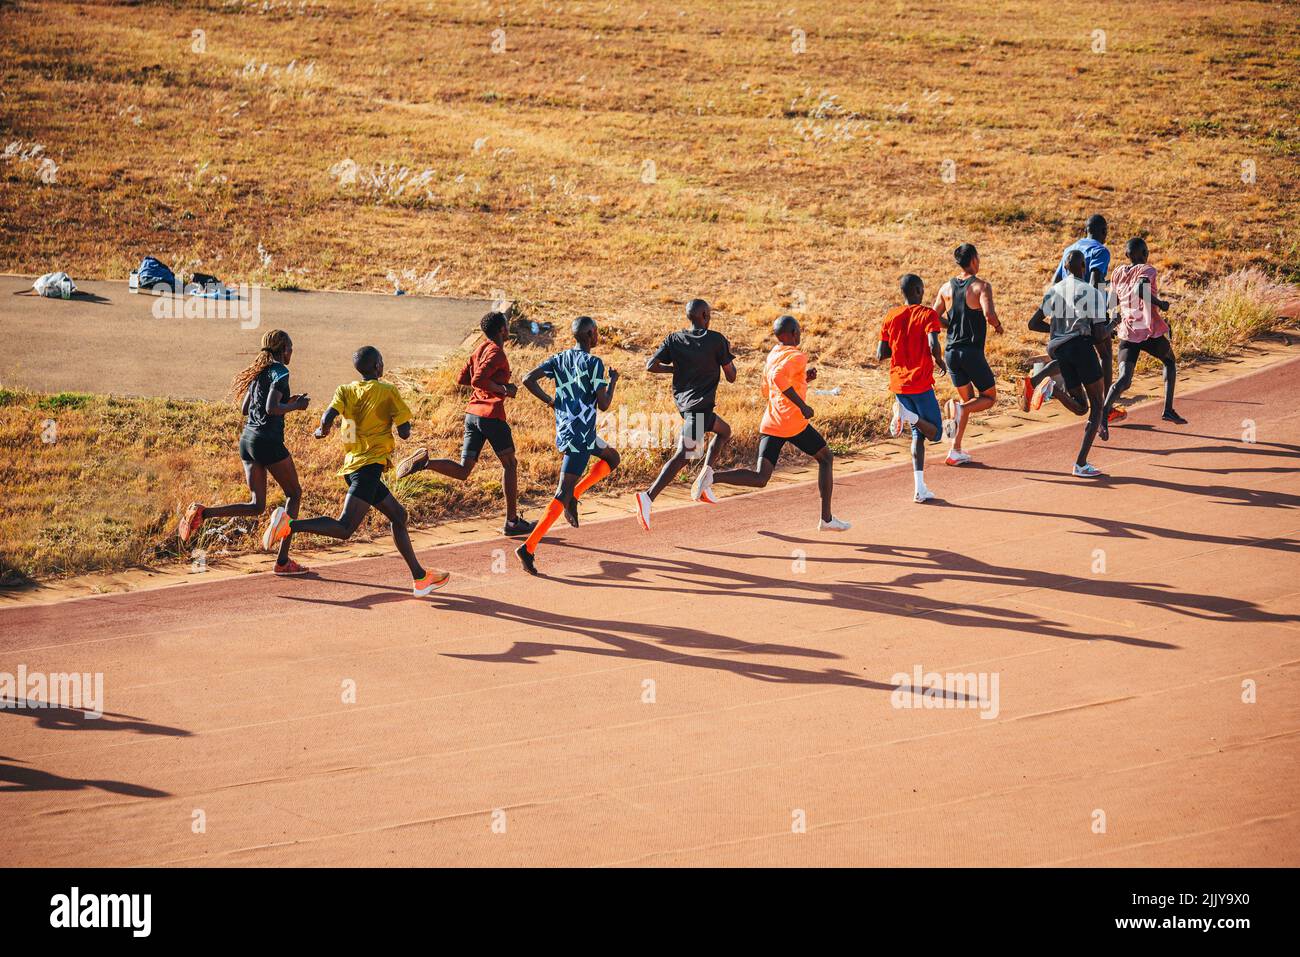 Les coureurs kenyans s'entraînent sur le circuit d'athlétisme de la ville d'Eldoret près d'Iten, le centre de la course d'endurance mondiale. Préparation au Kenya pour Banque D'Images